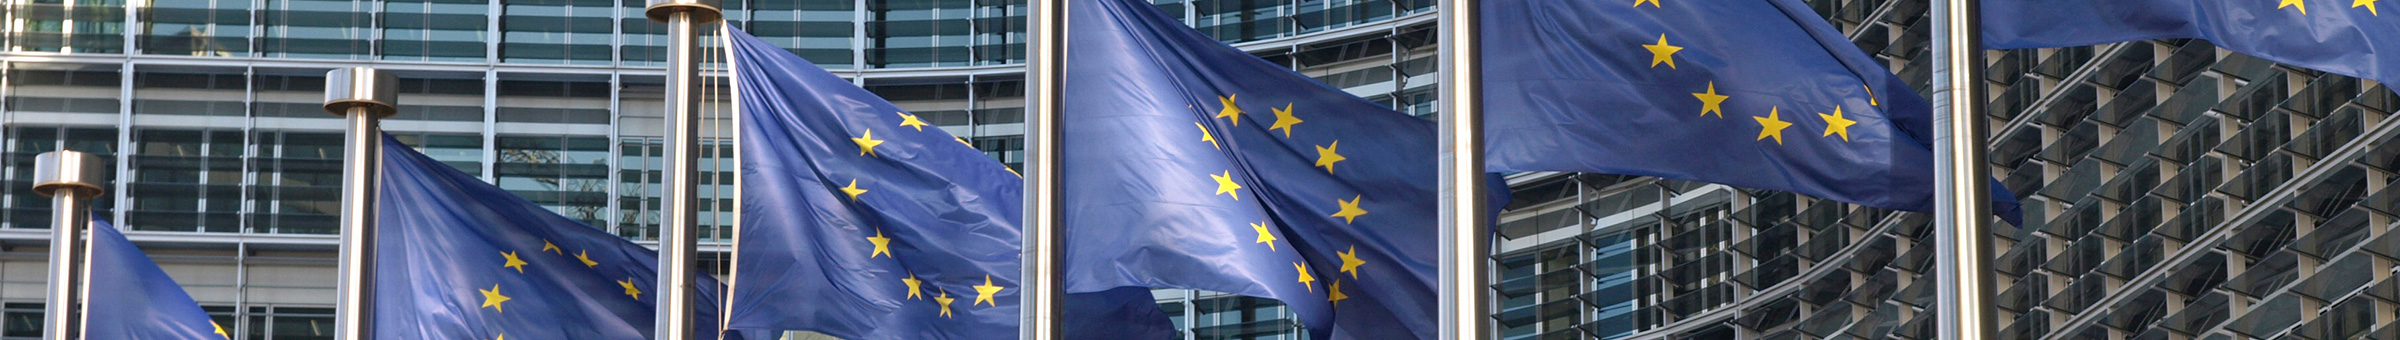 Auf dem Bild sind sind mehrere Fahnenmasten mit der EU-Flagge zu sehen.